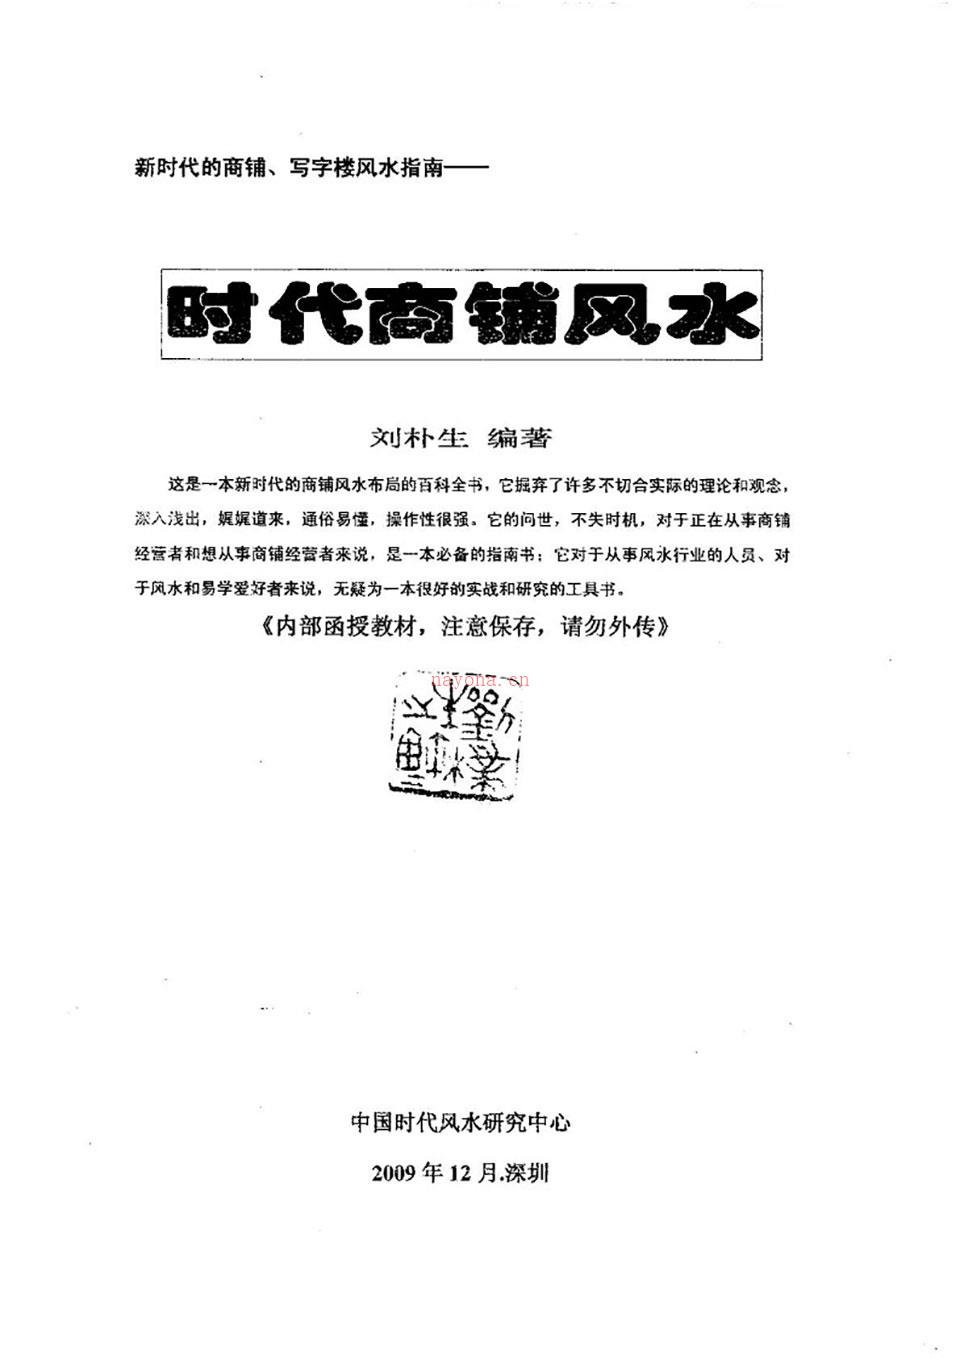 刘朴生 《时代商铺风水学》100页.pdf 百度网盘资源